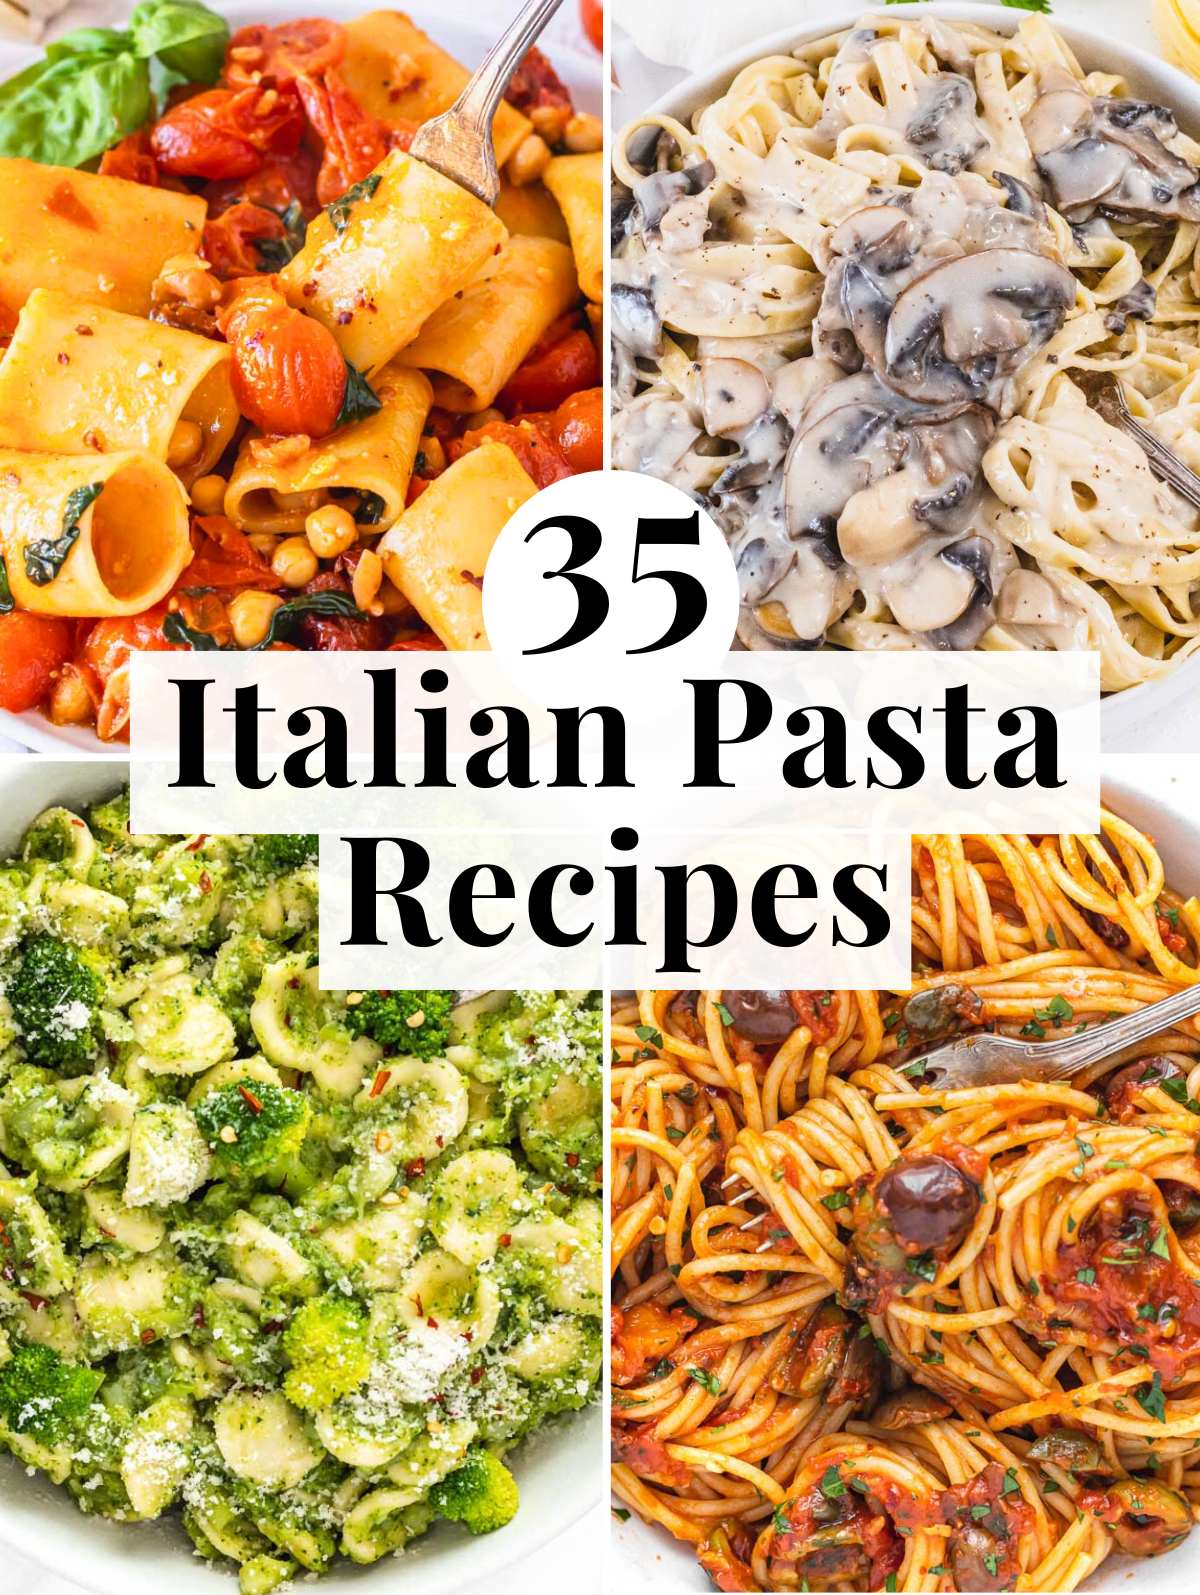 Italian pasta recipes with spaghetti, fettuccine and more